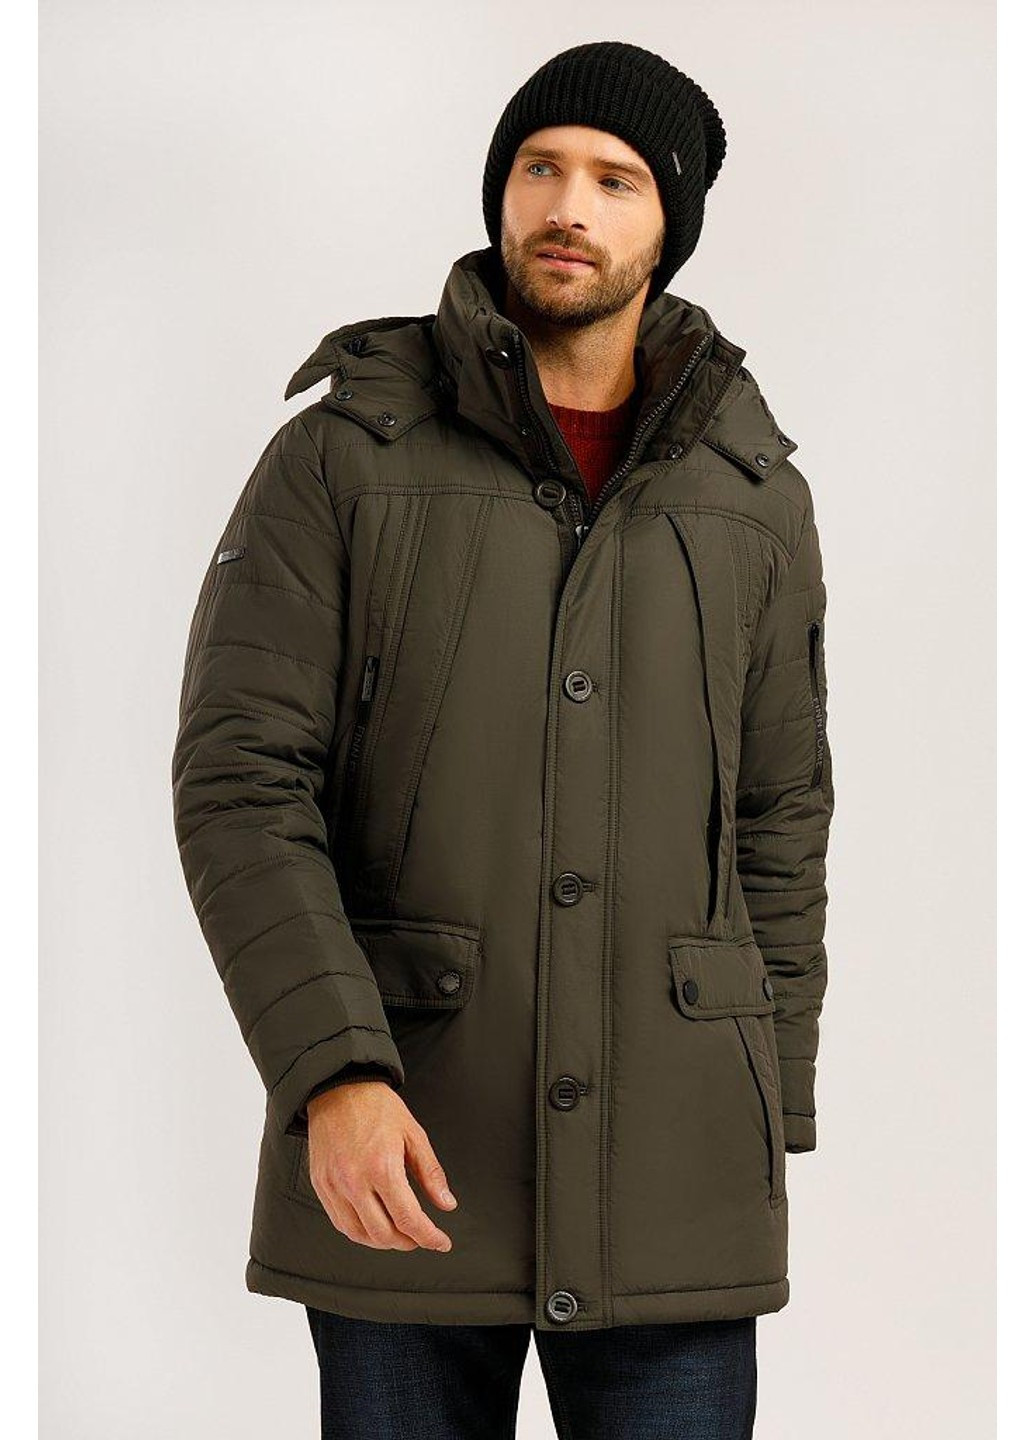 Коричневая зимняя зимняя куртка w19-42004-601 Finn Flare